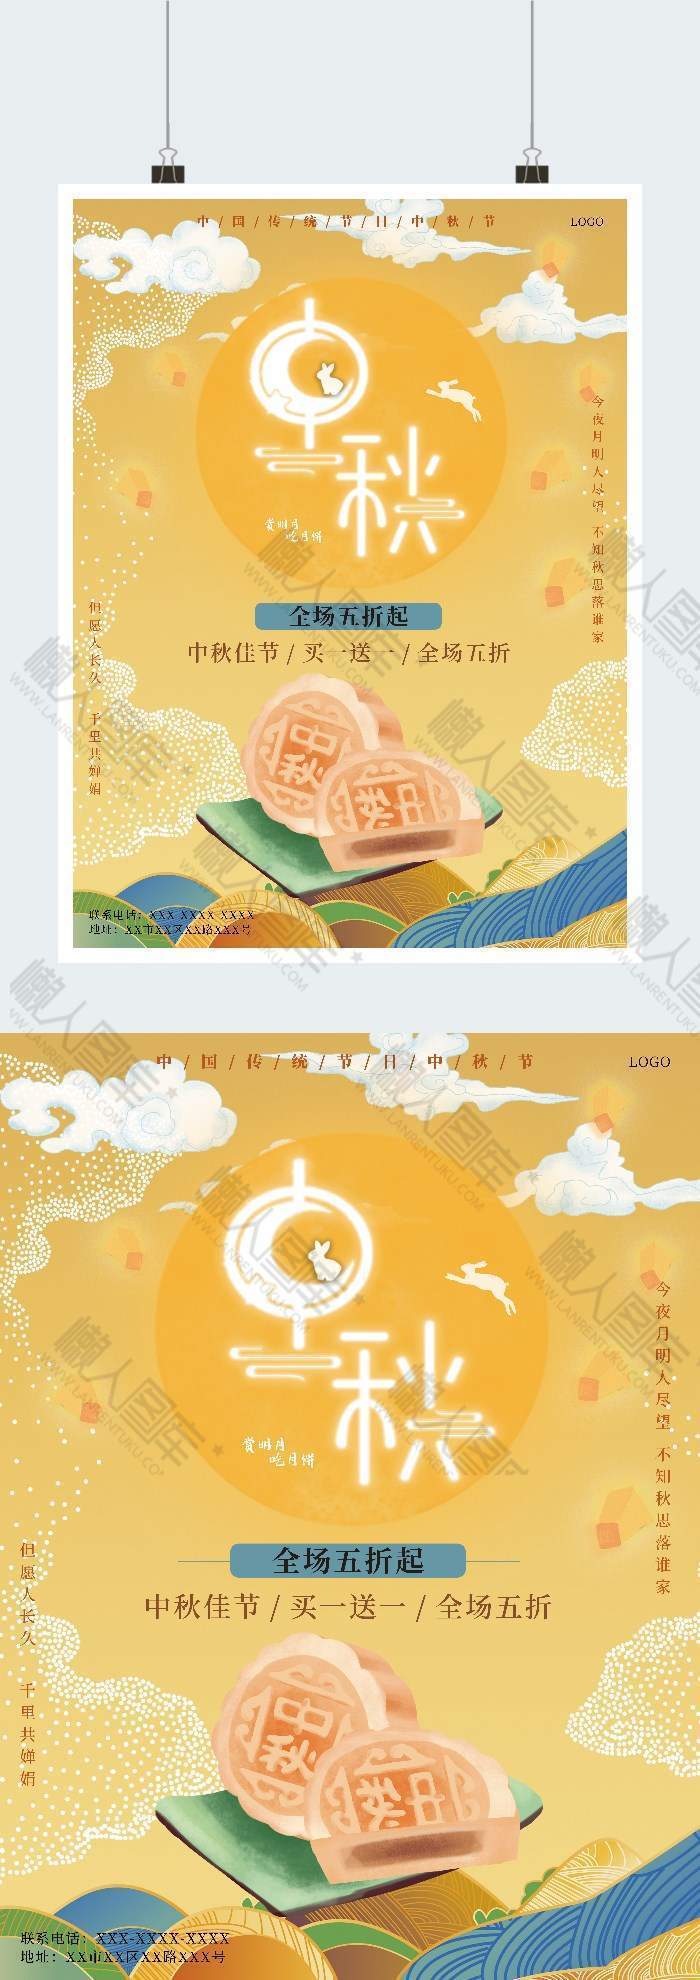 2020中秋节宣传海报